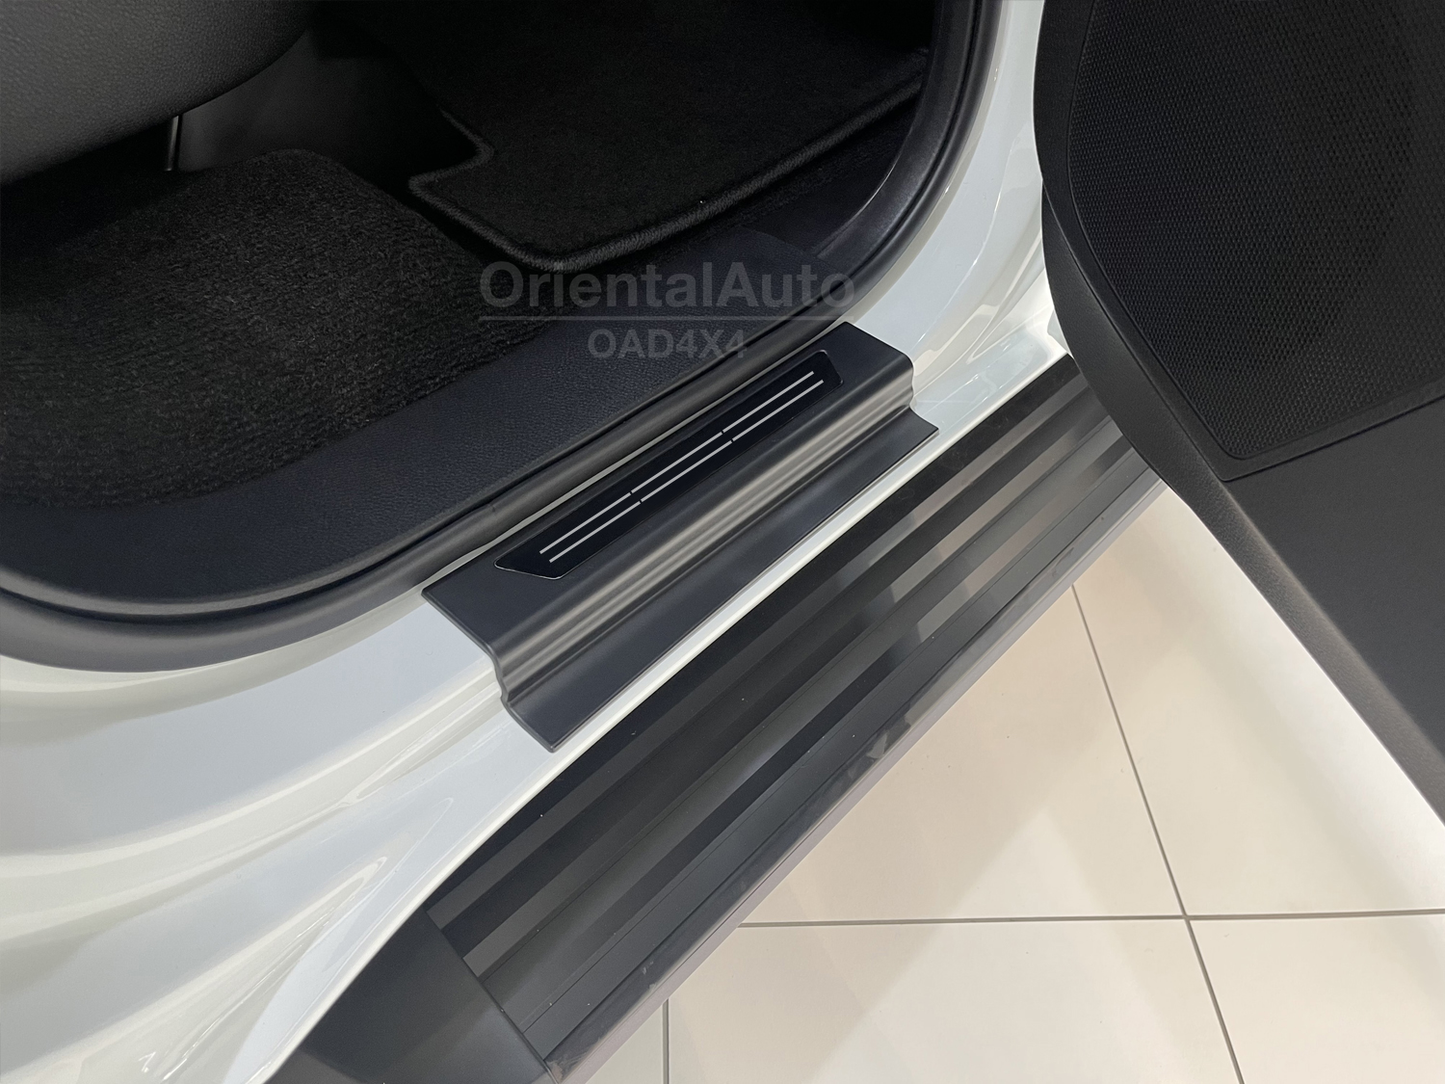 OAD 5D TPE Floor Mats & Black Door Sills Protector for ISUZU MUX MU-X 2021+ Tailored Door Sill Covered Floor Mat Liner Car Mats + Stainless Steel Scuff Plates